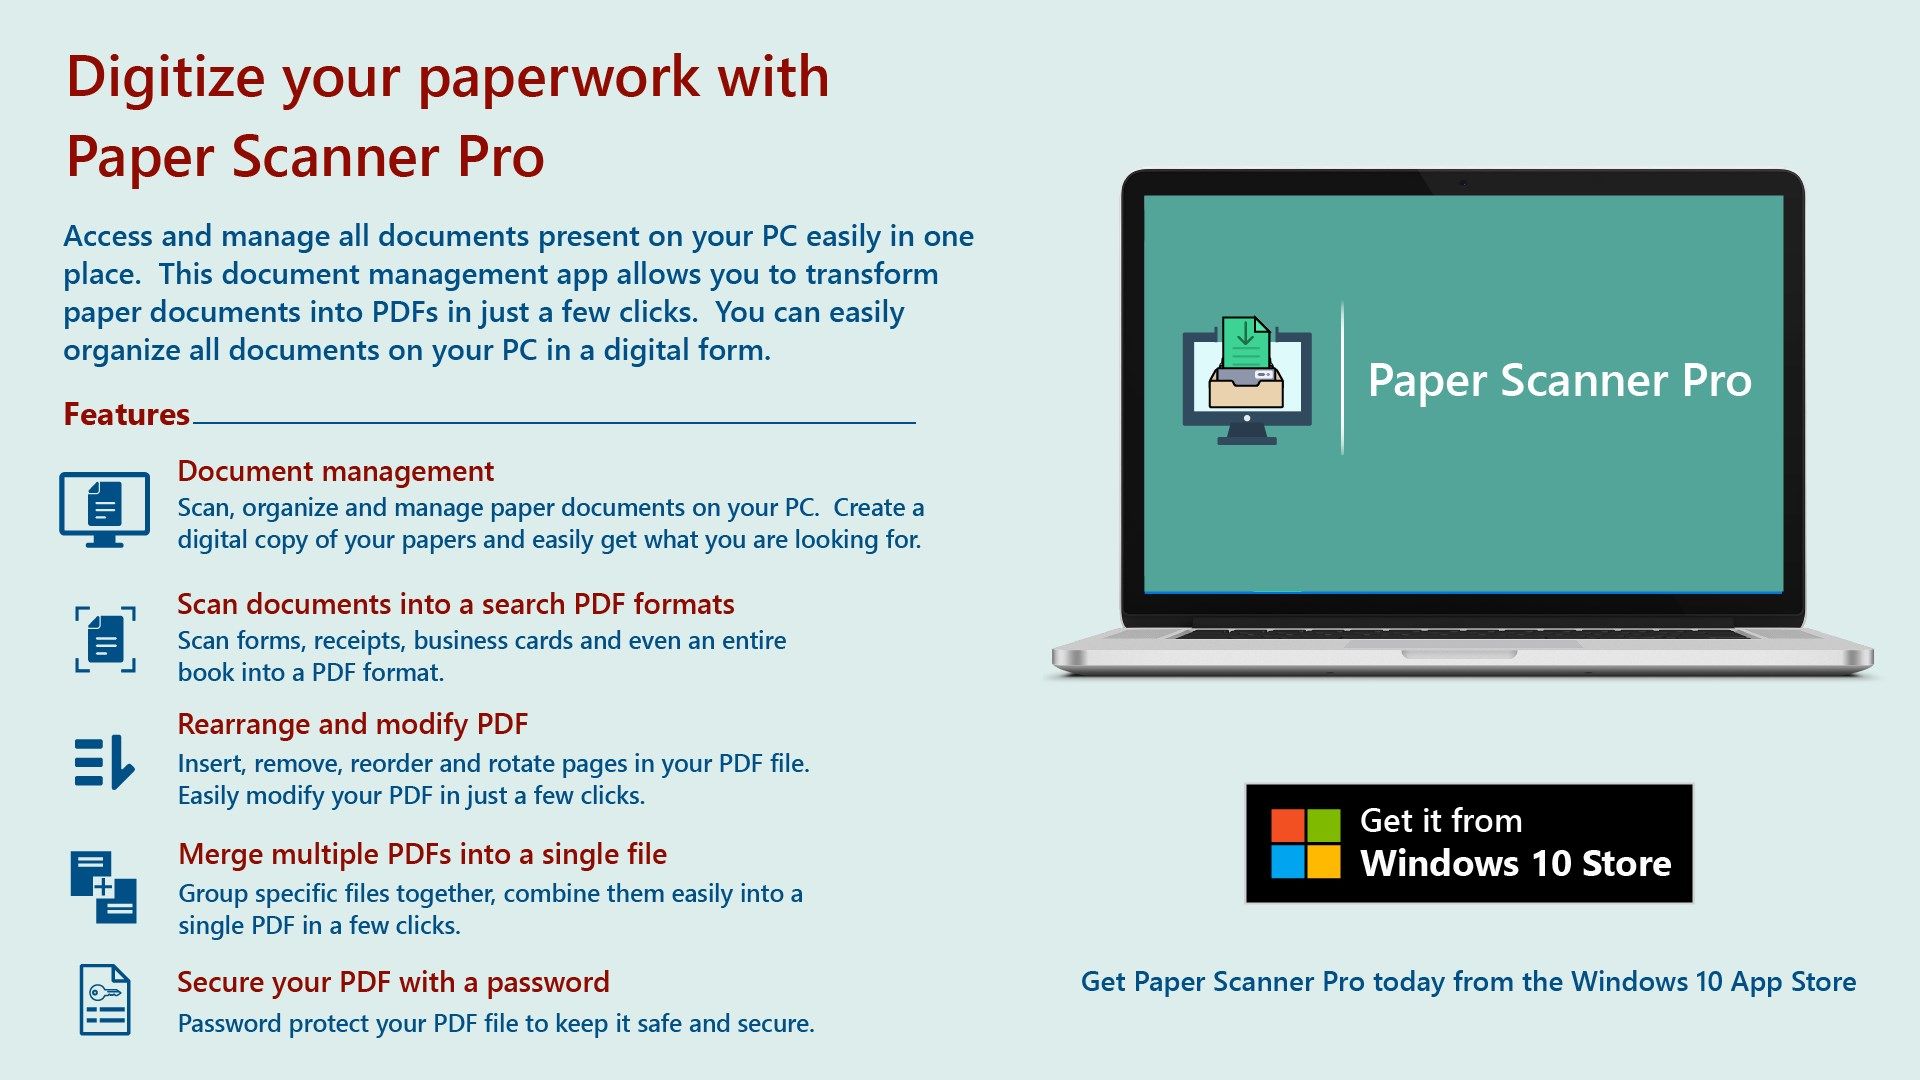 Paper Scanner Pro